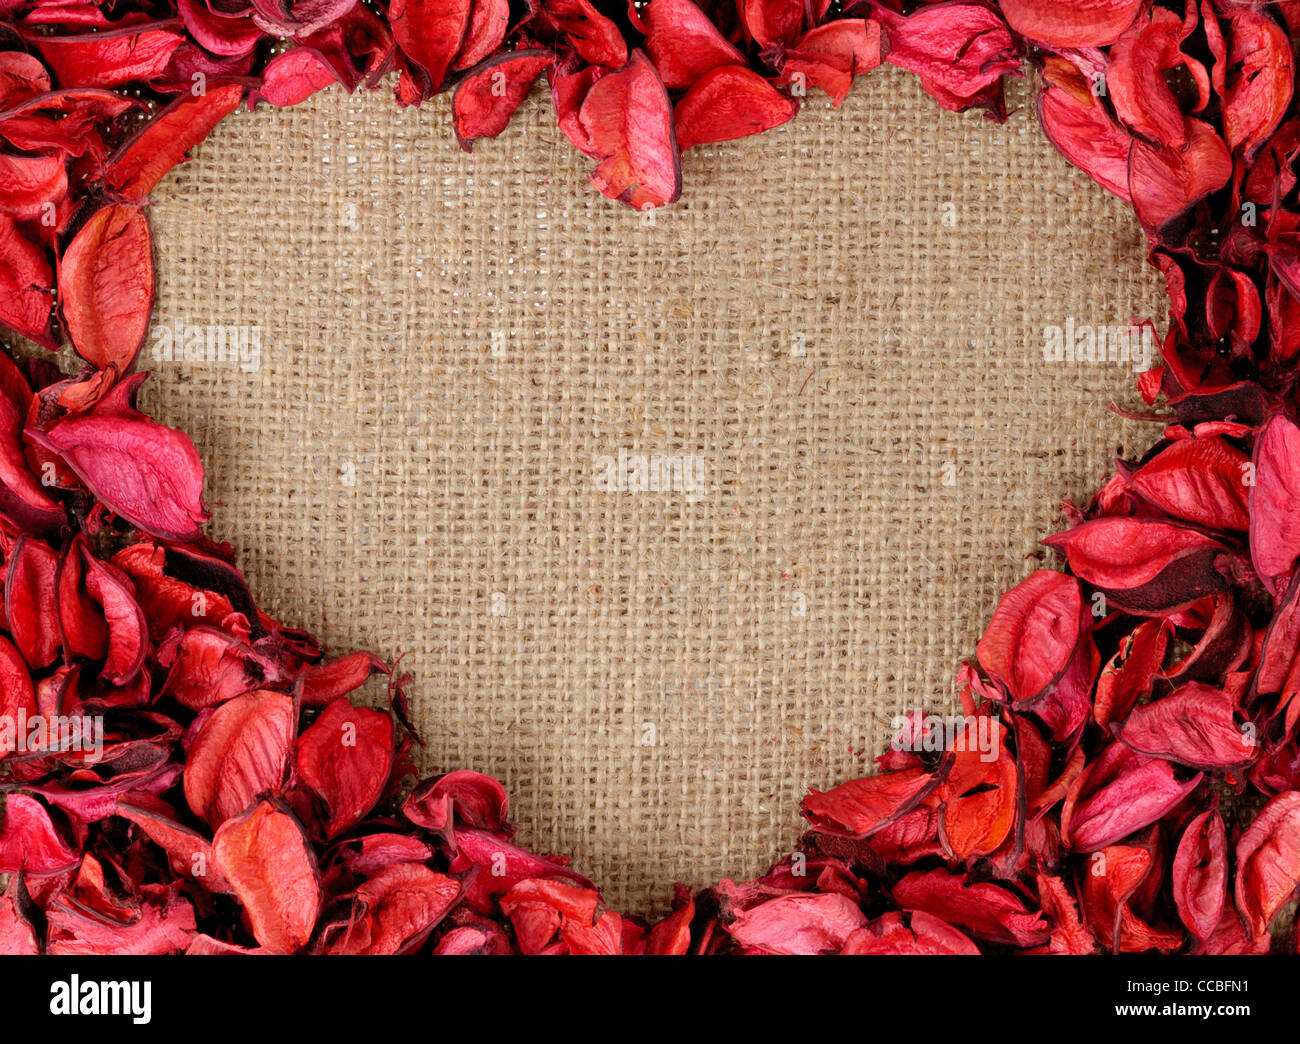 Petali rossi a forma di cuore su sfondo nero semplice che rappresentano  amore e romanticismo Foto stock - Alamy